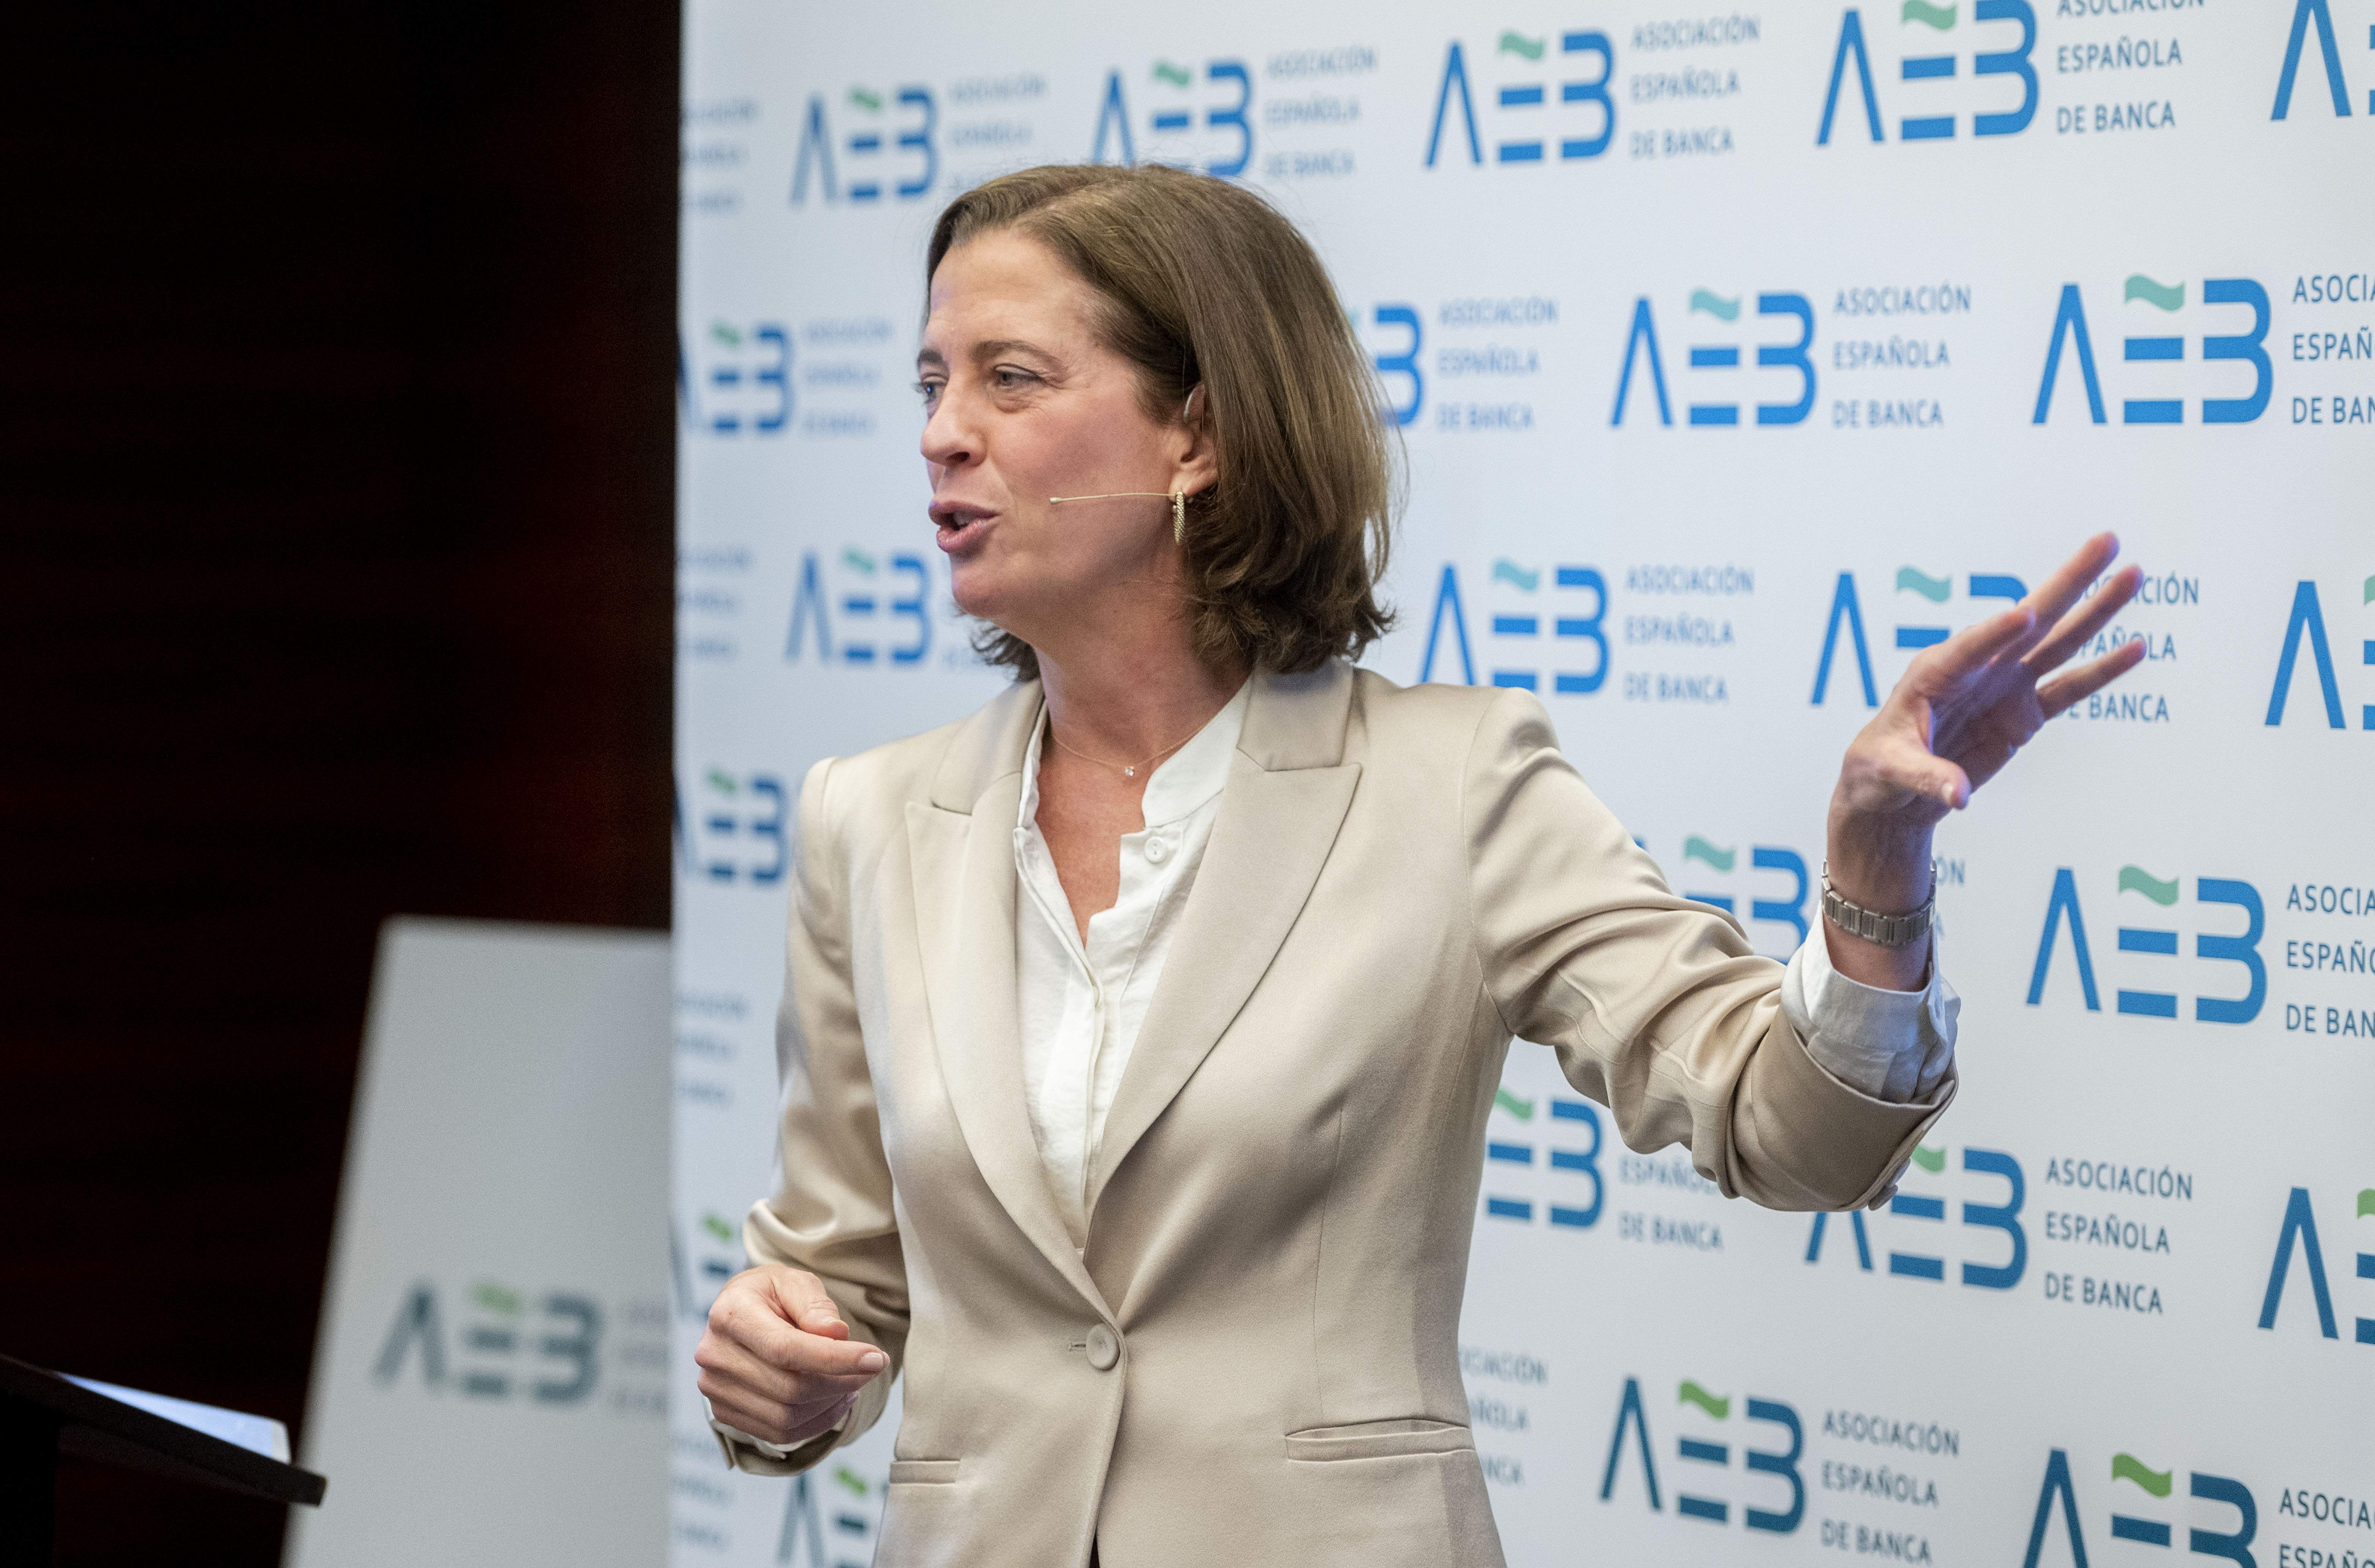 La presidenta de AEB, Alejandra Kindelan